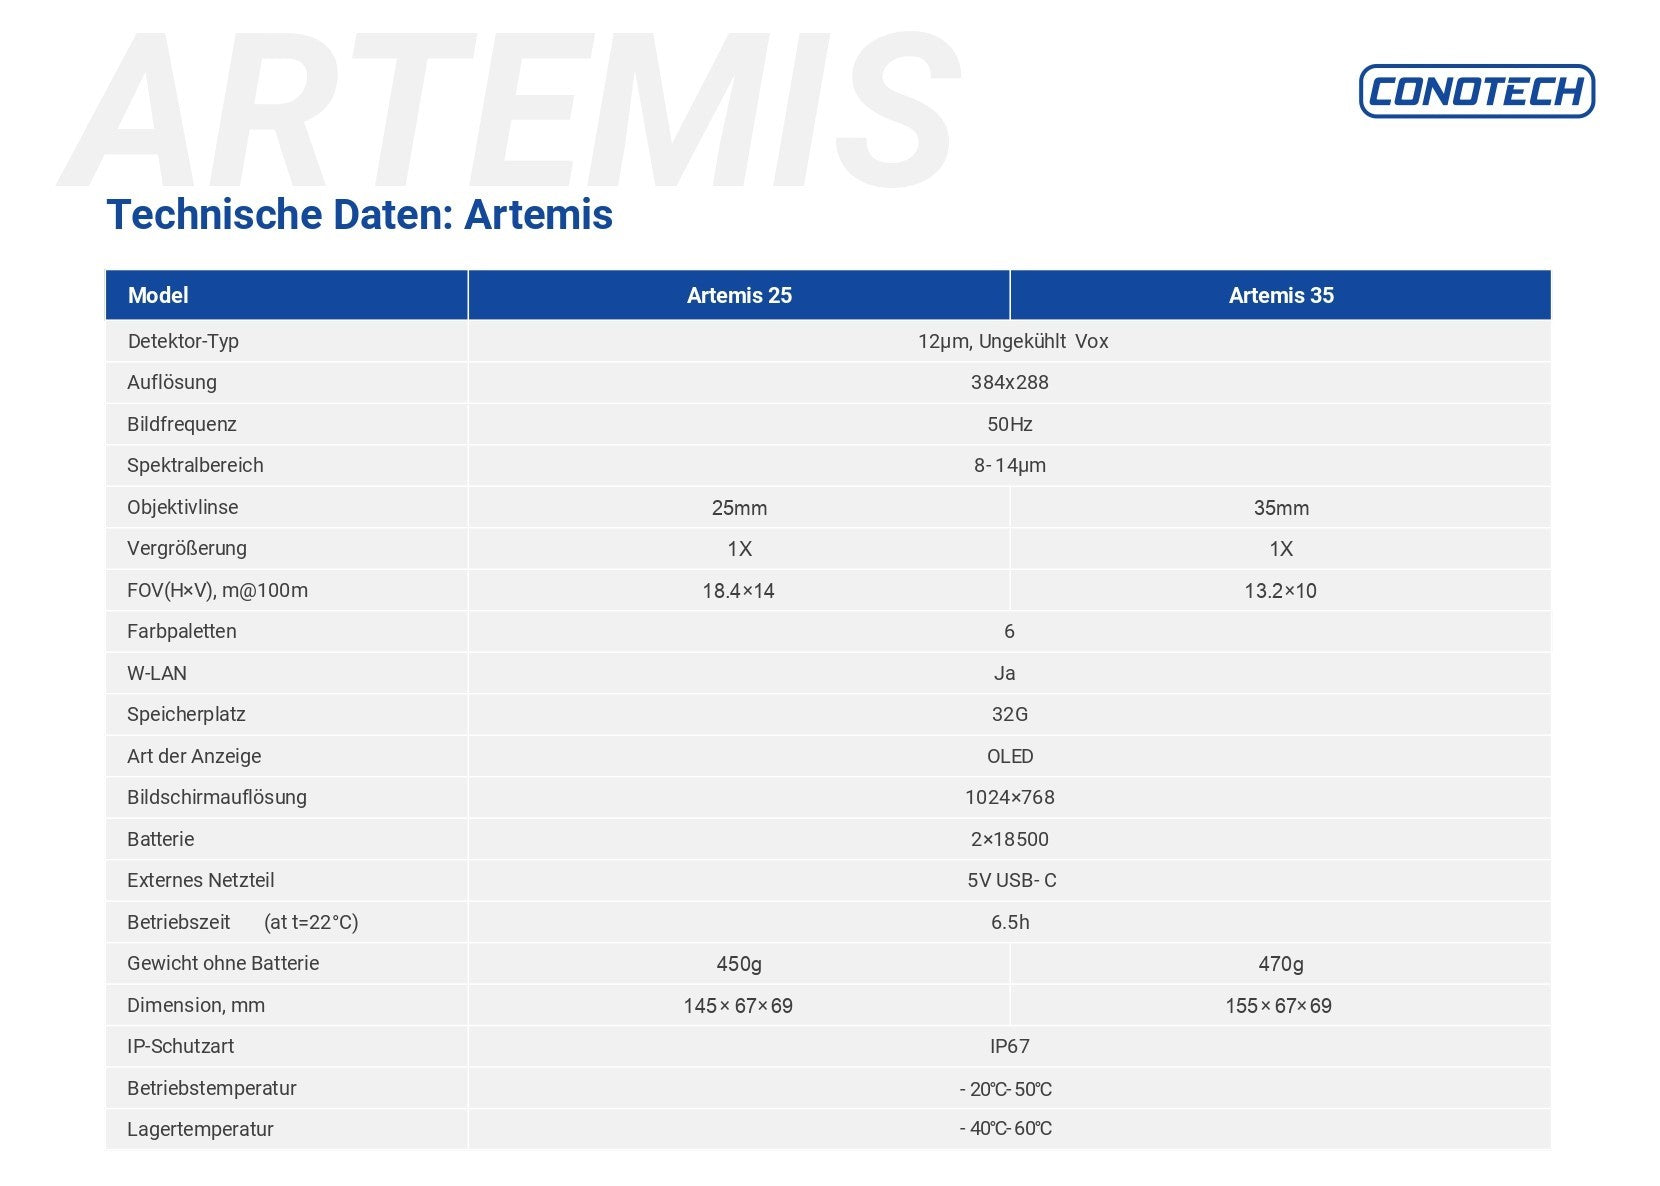 Conotech Artemis 35